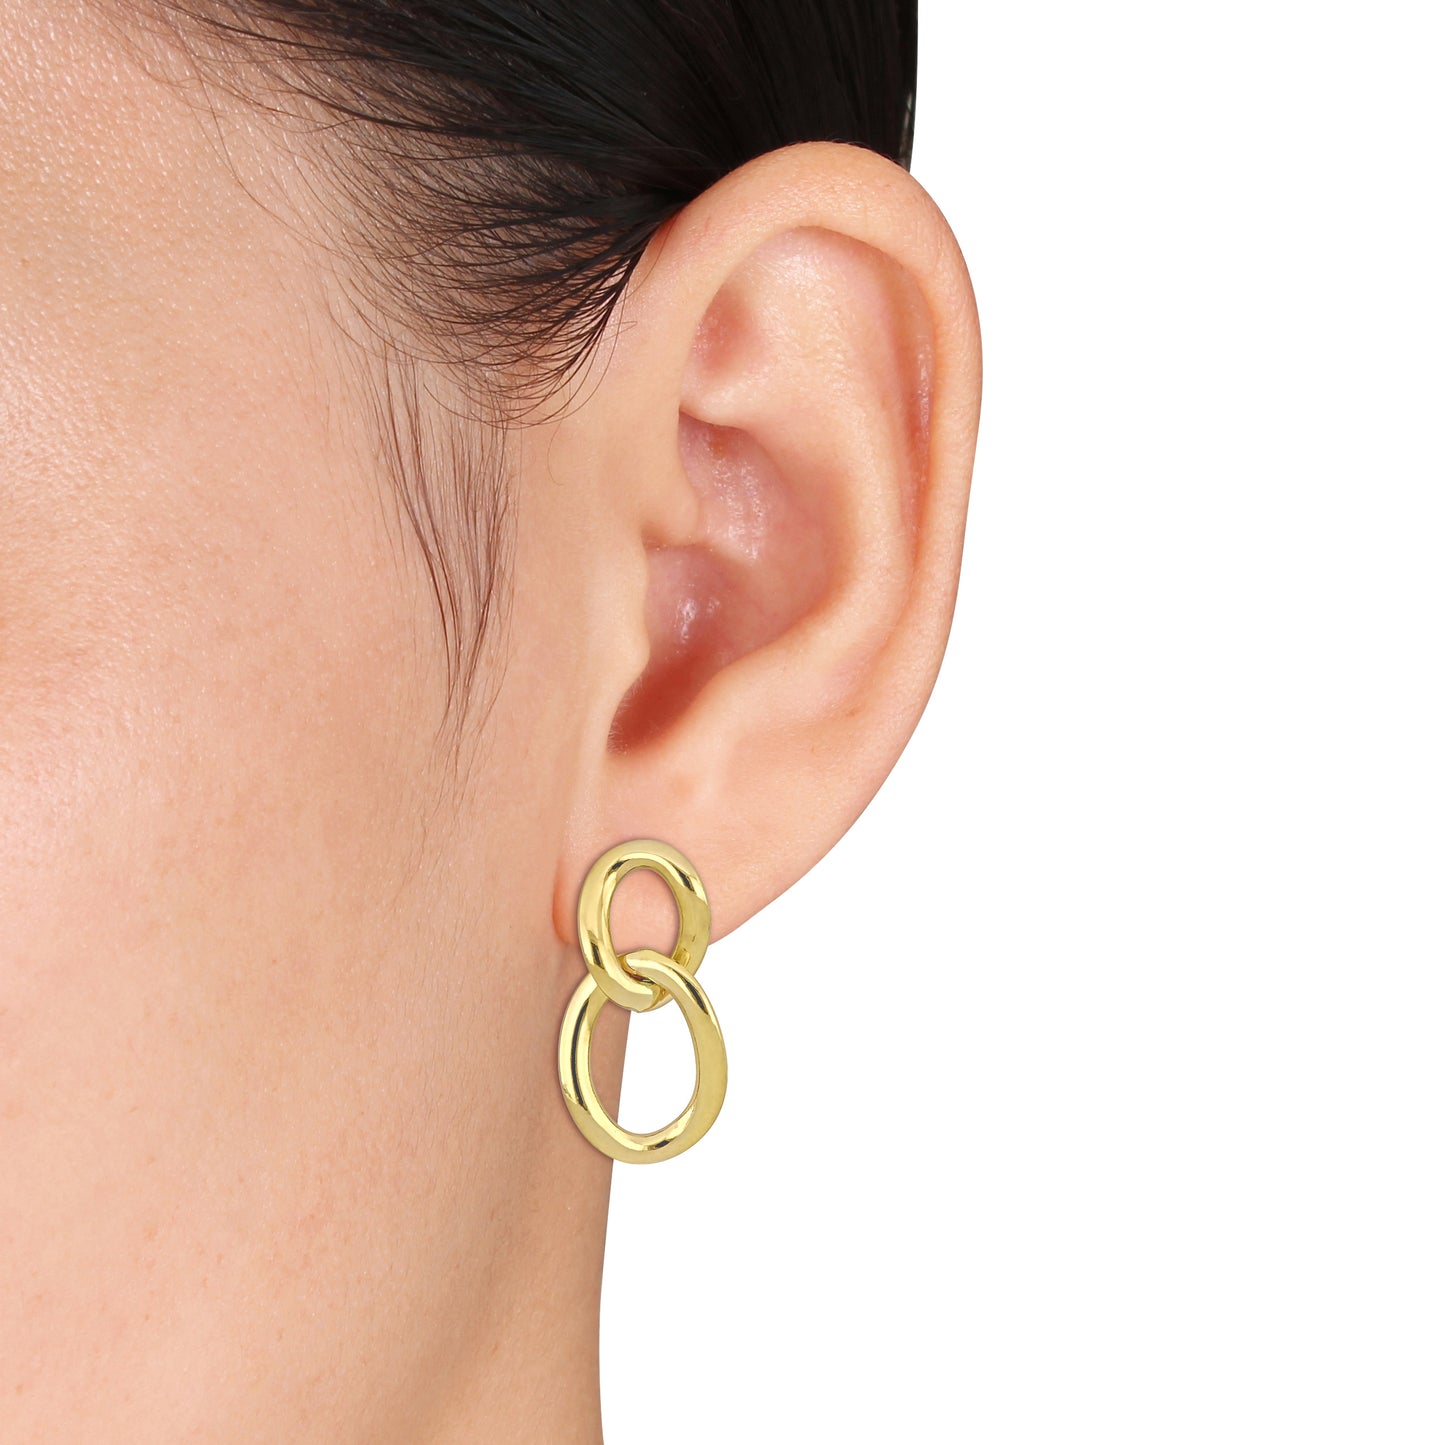 Chain Hoop Earrings in 10k Yellow Gold